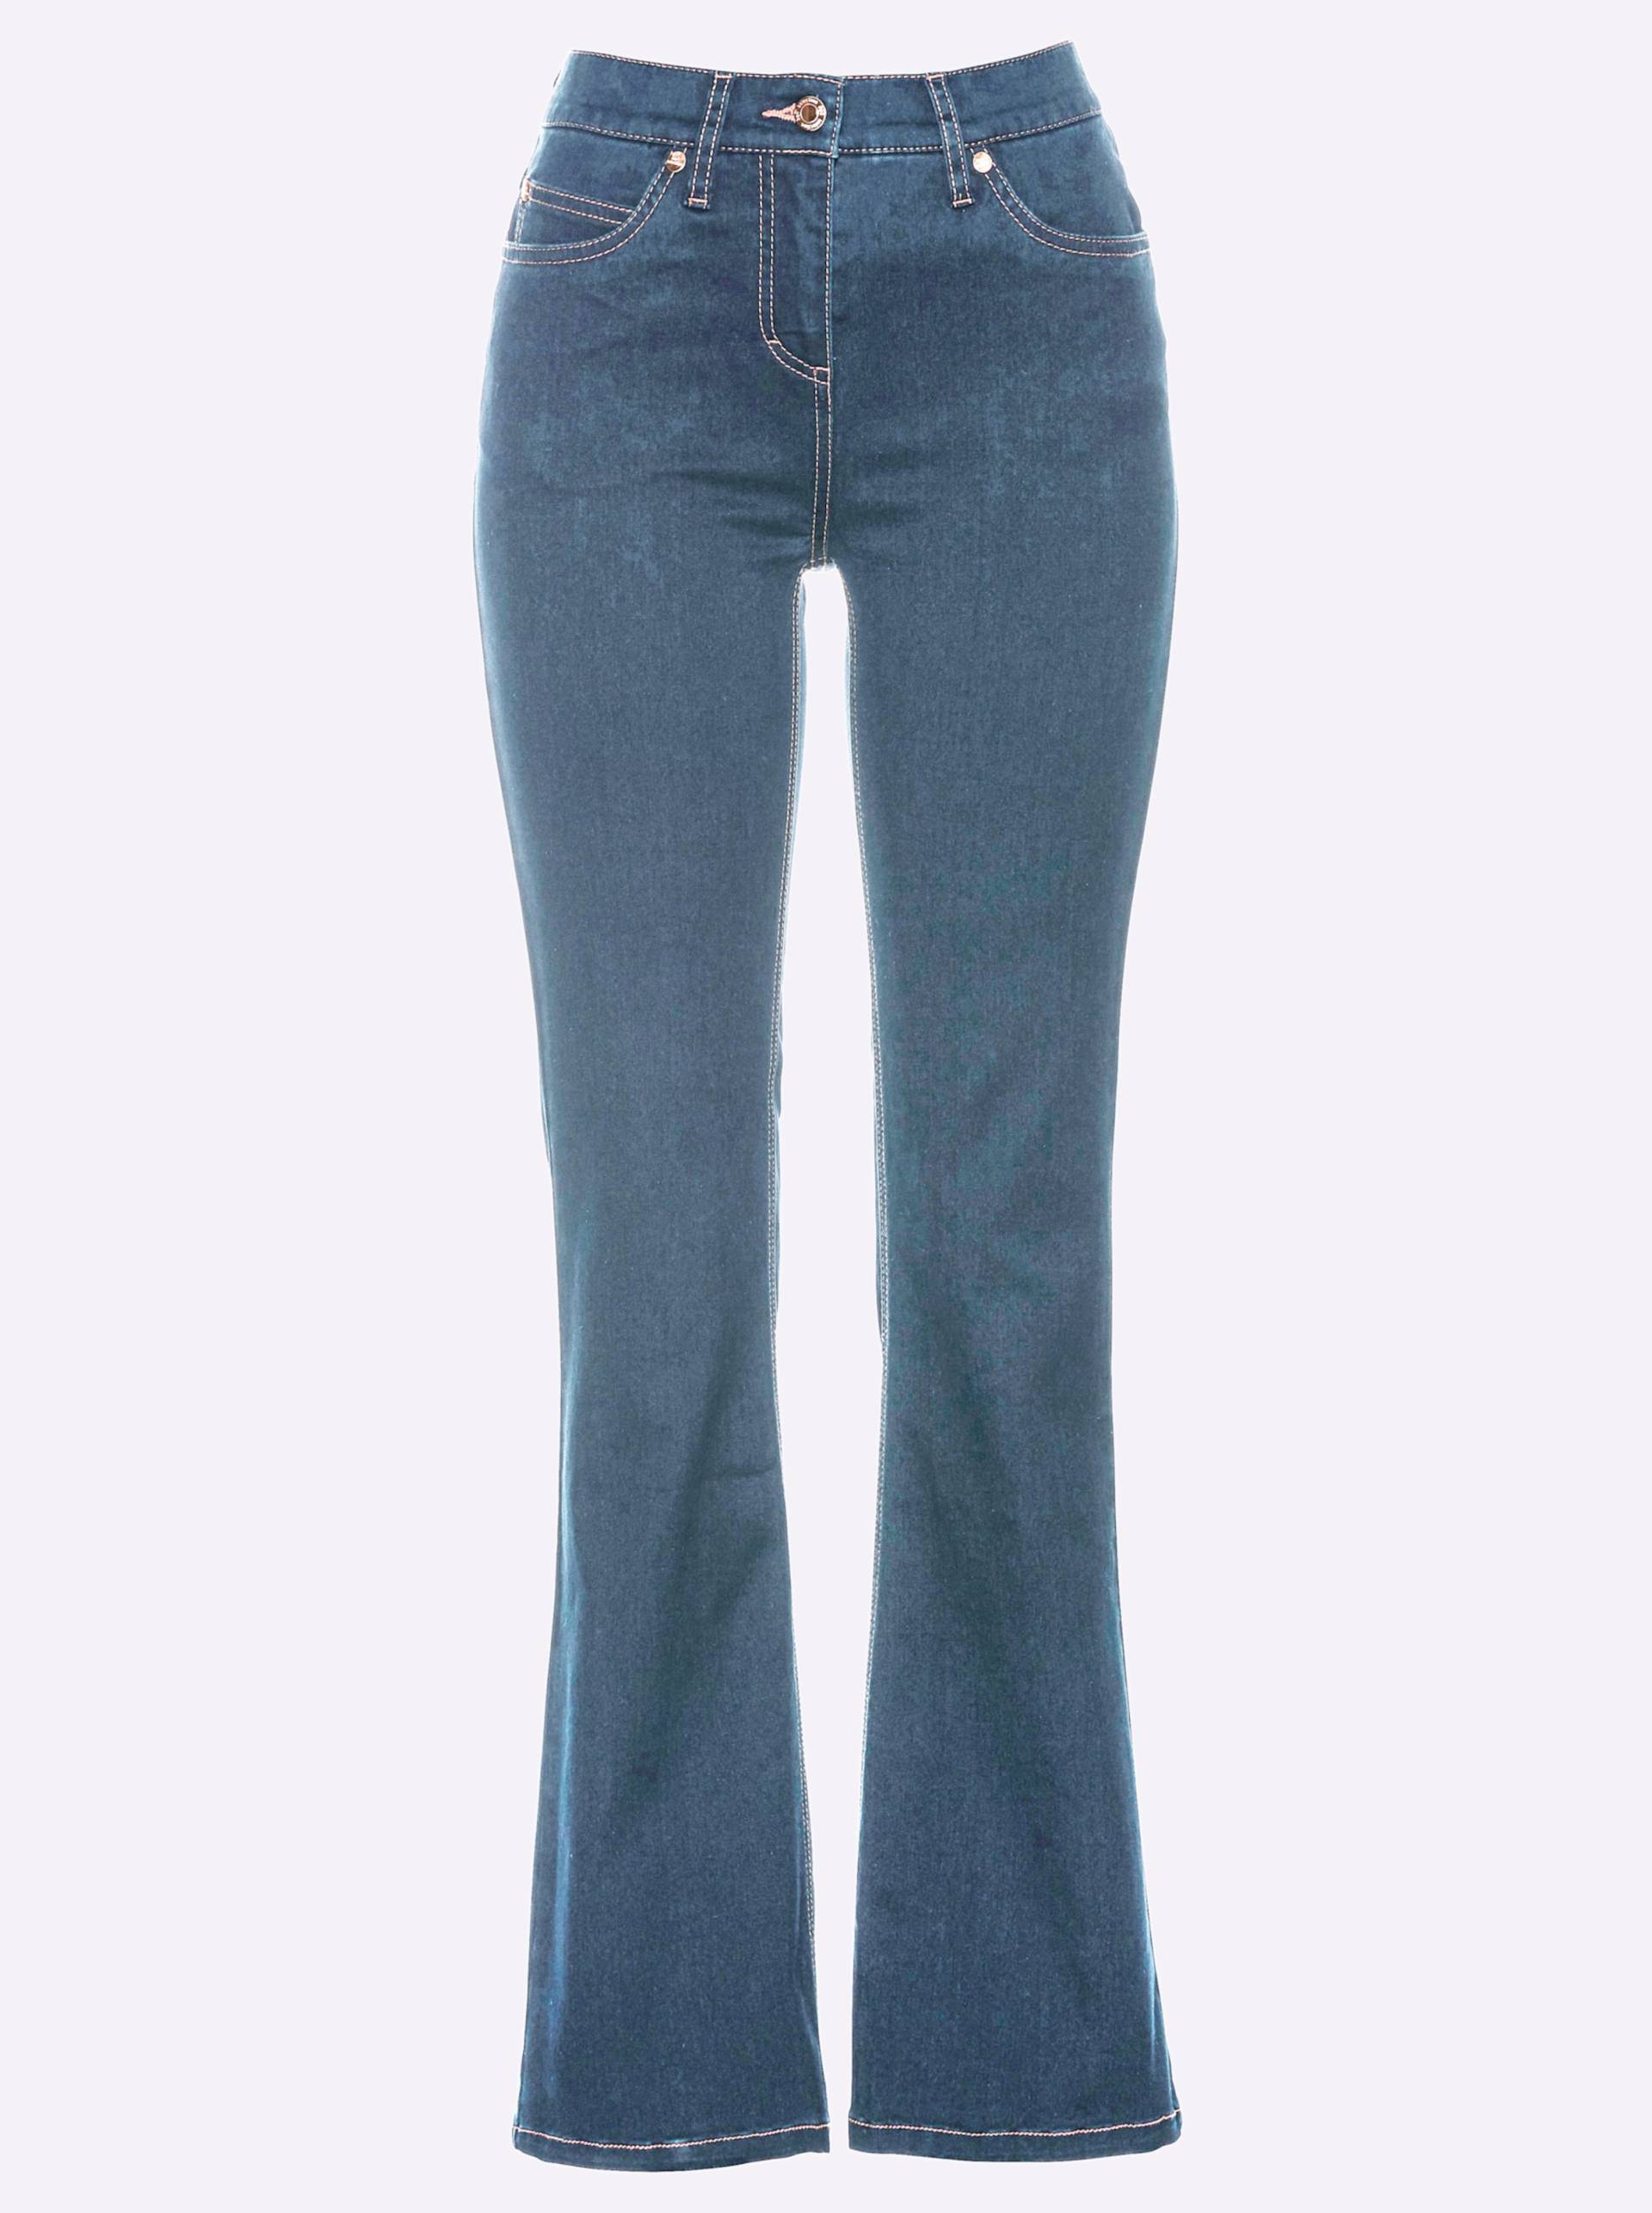 Bootcut-Jeans in blue-bleached von heine